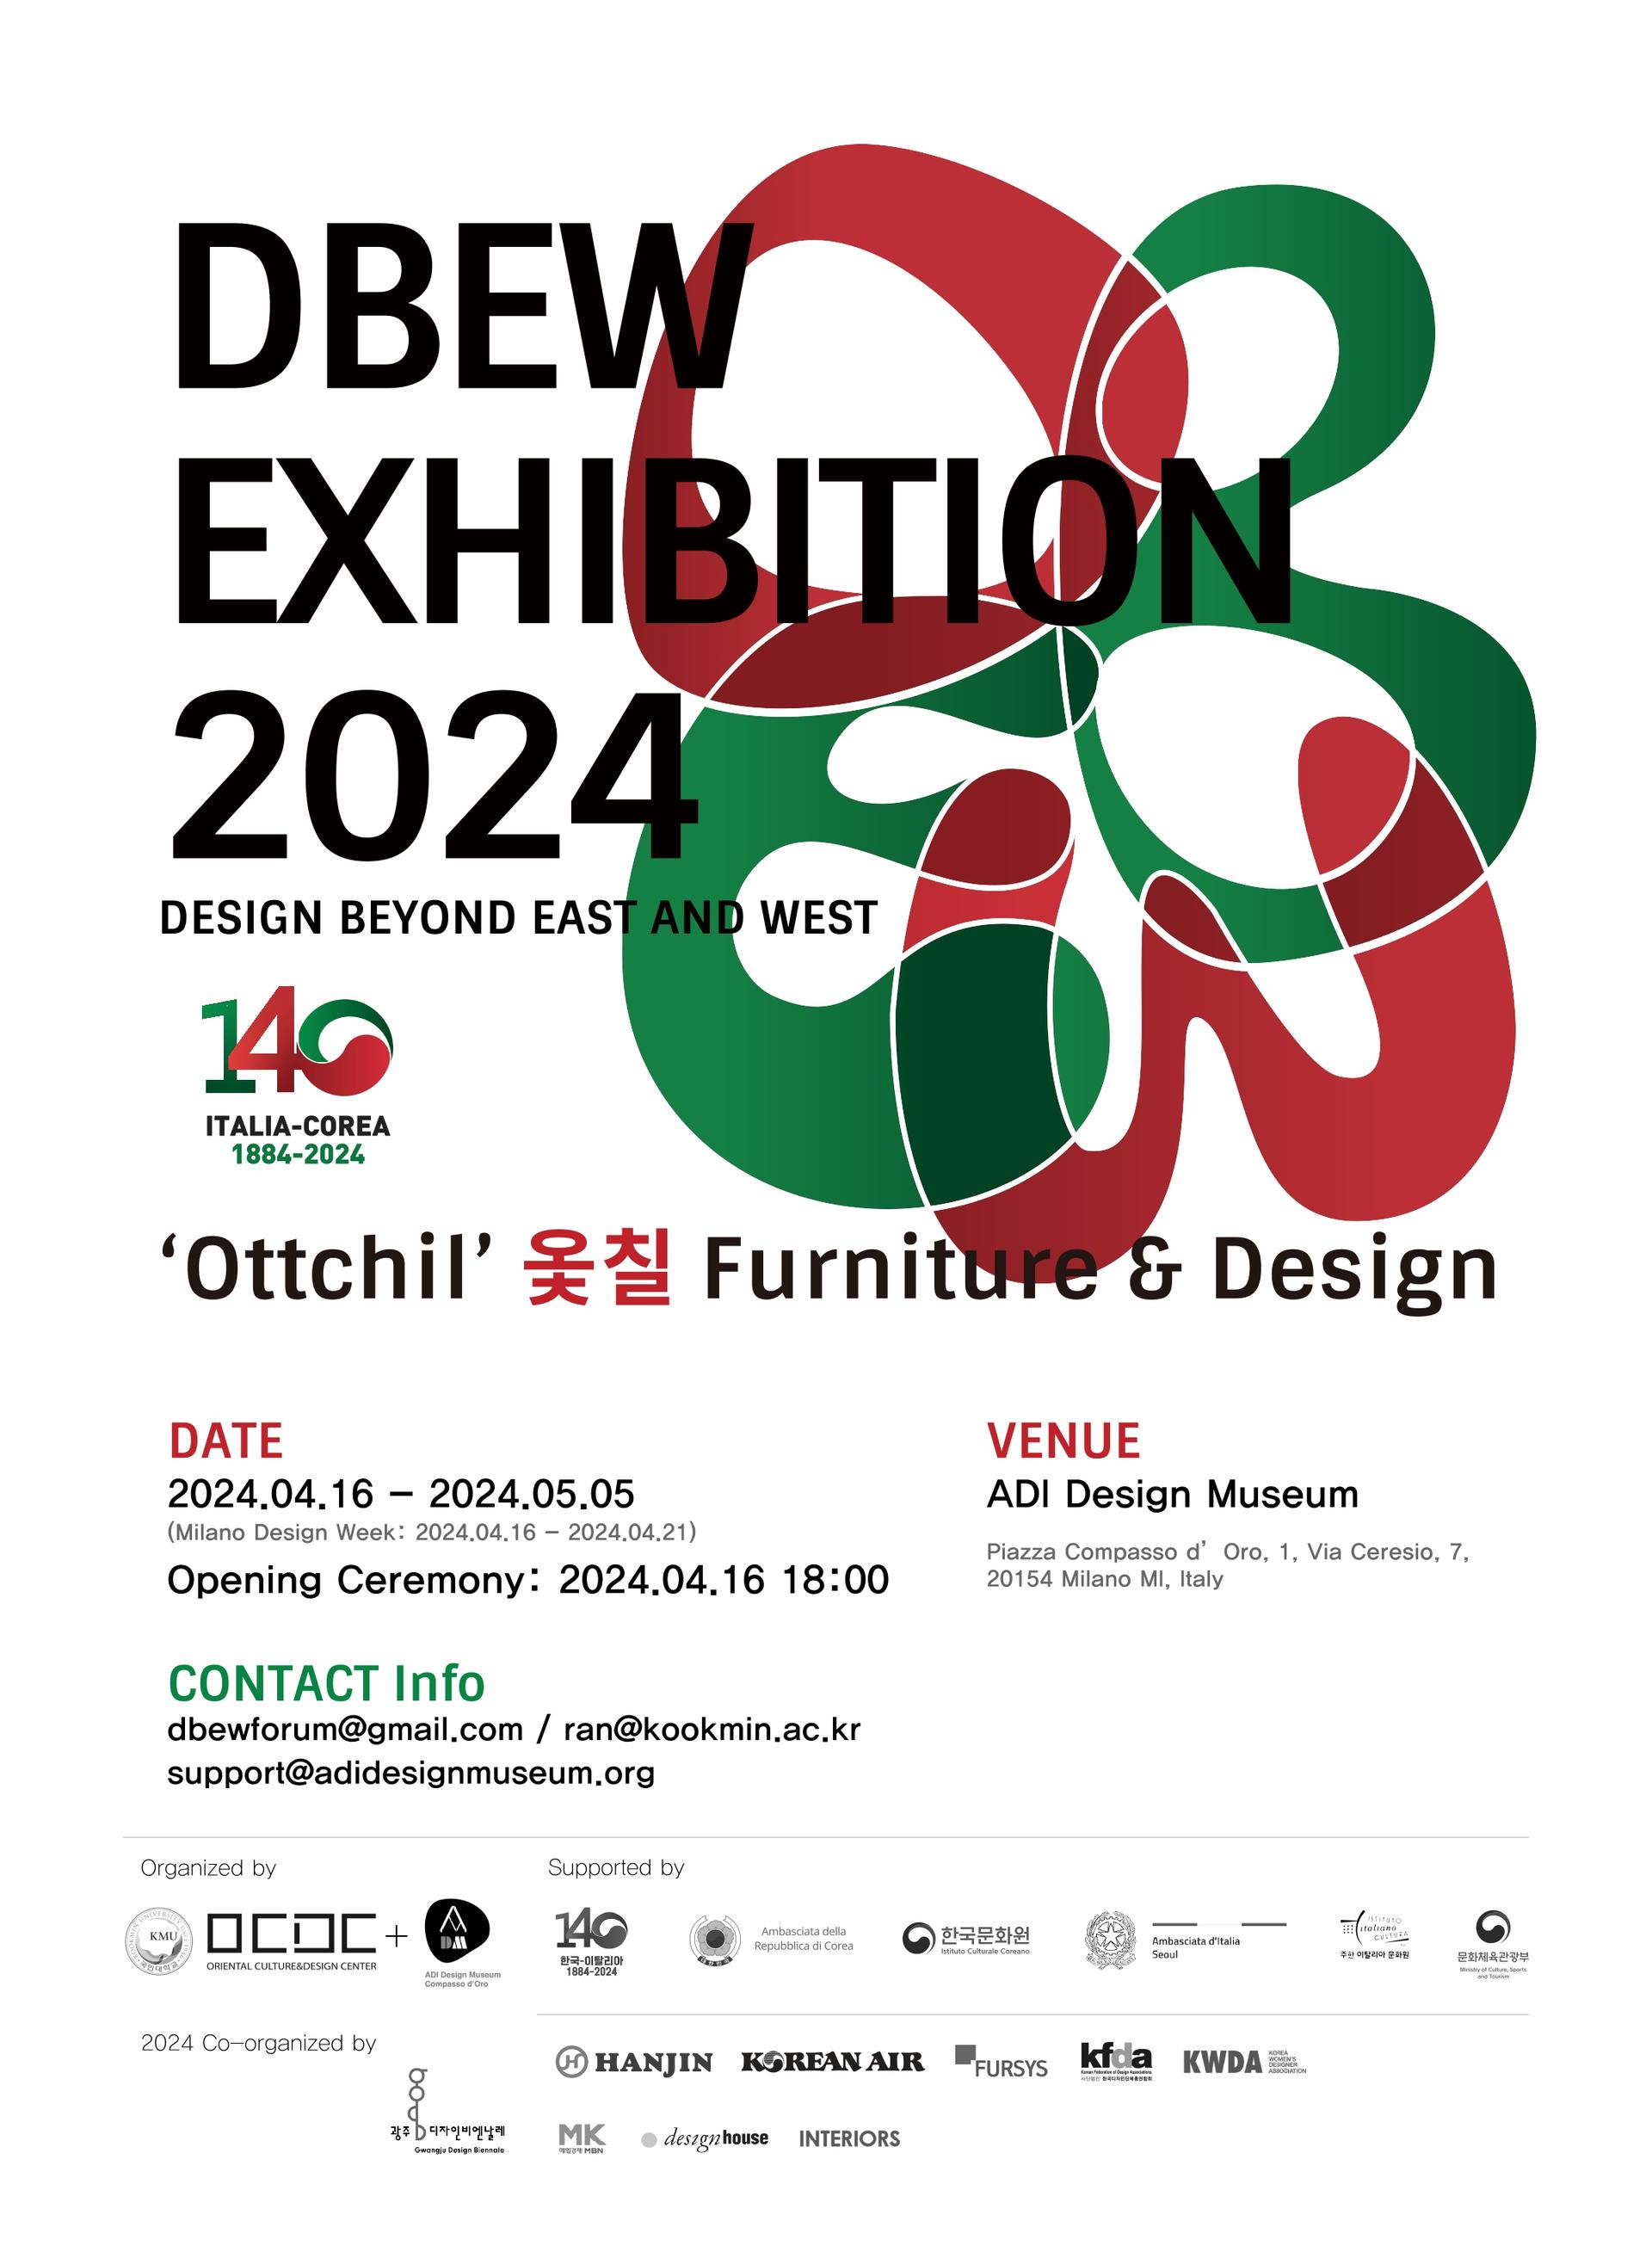 DBEW exhibition 2024